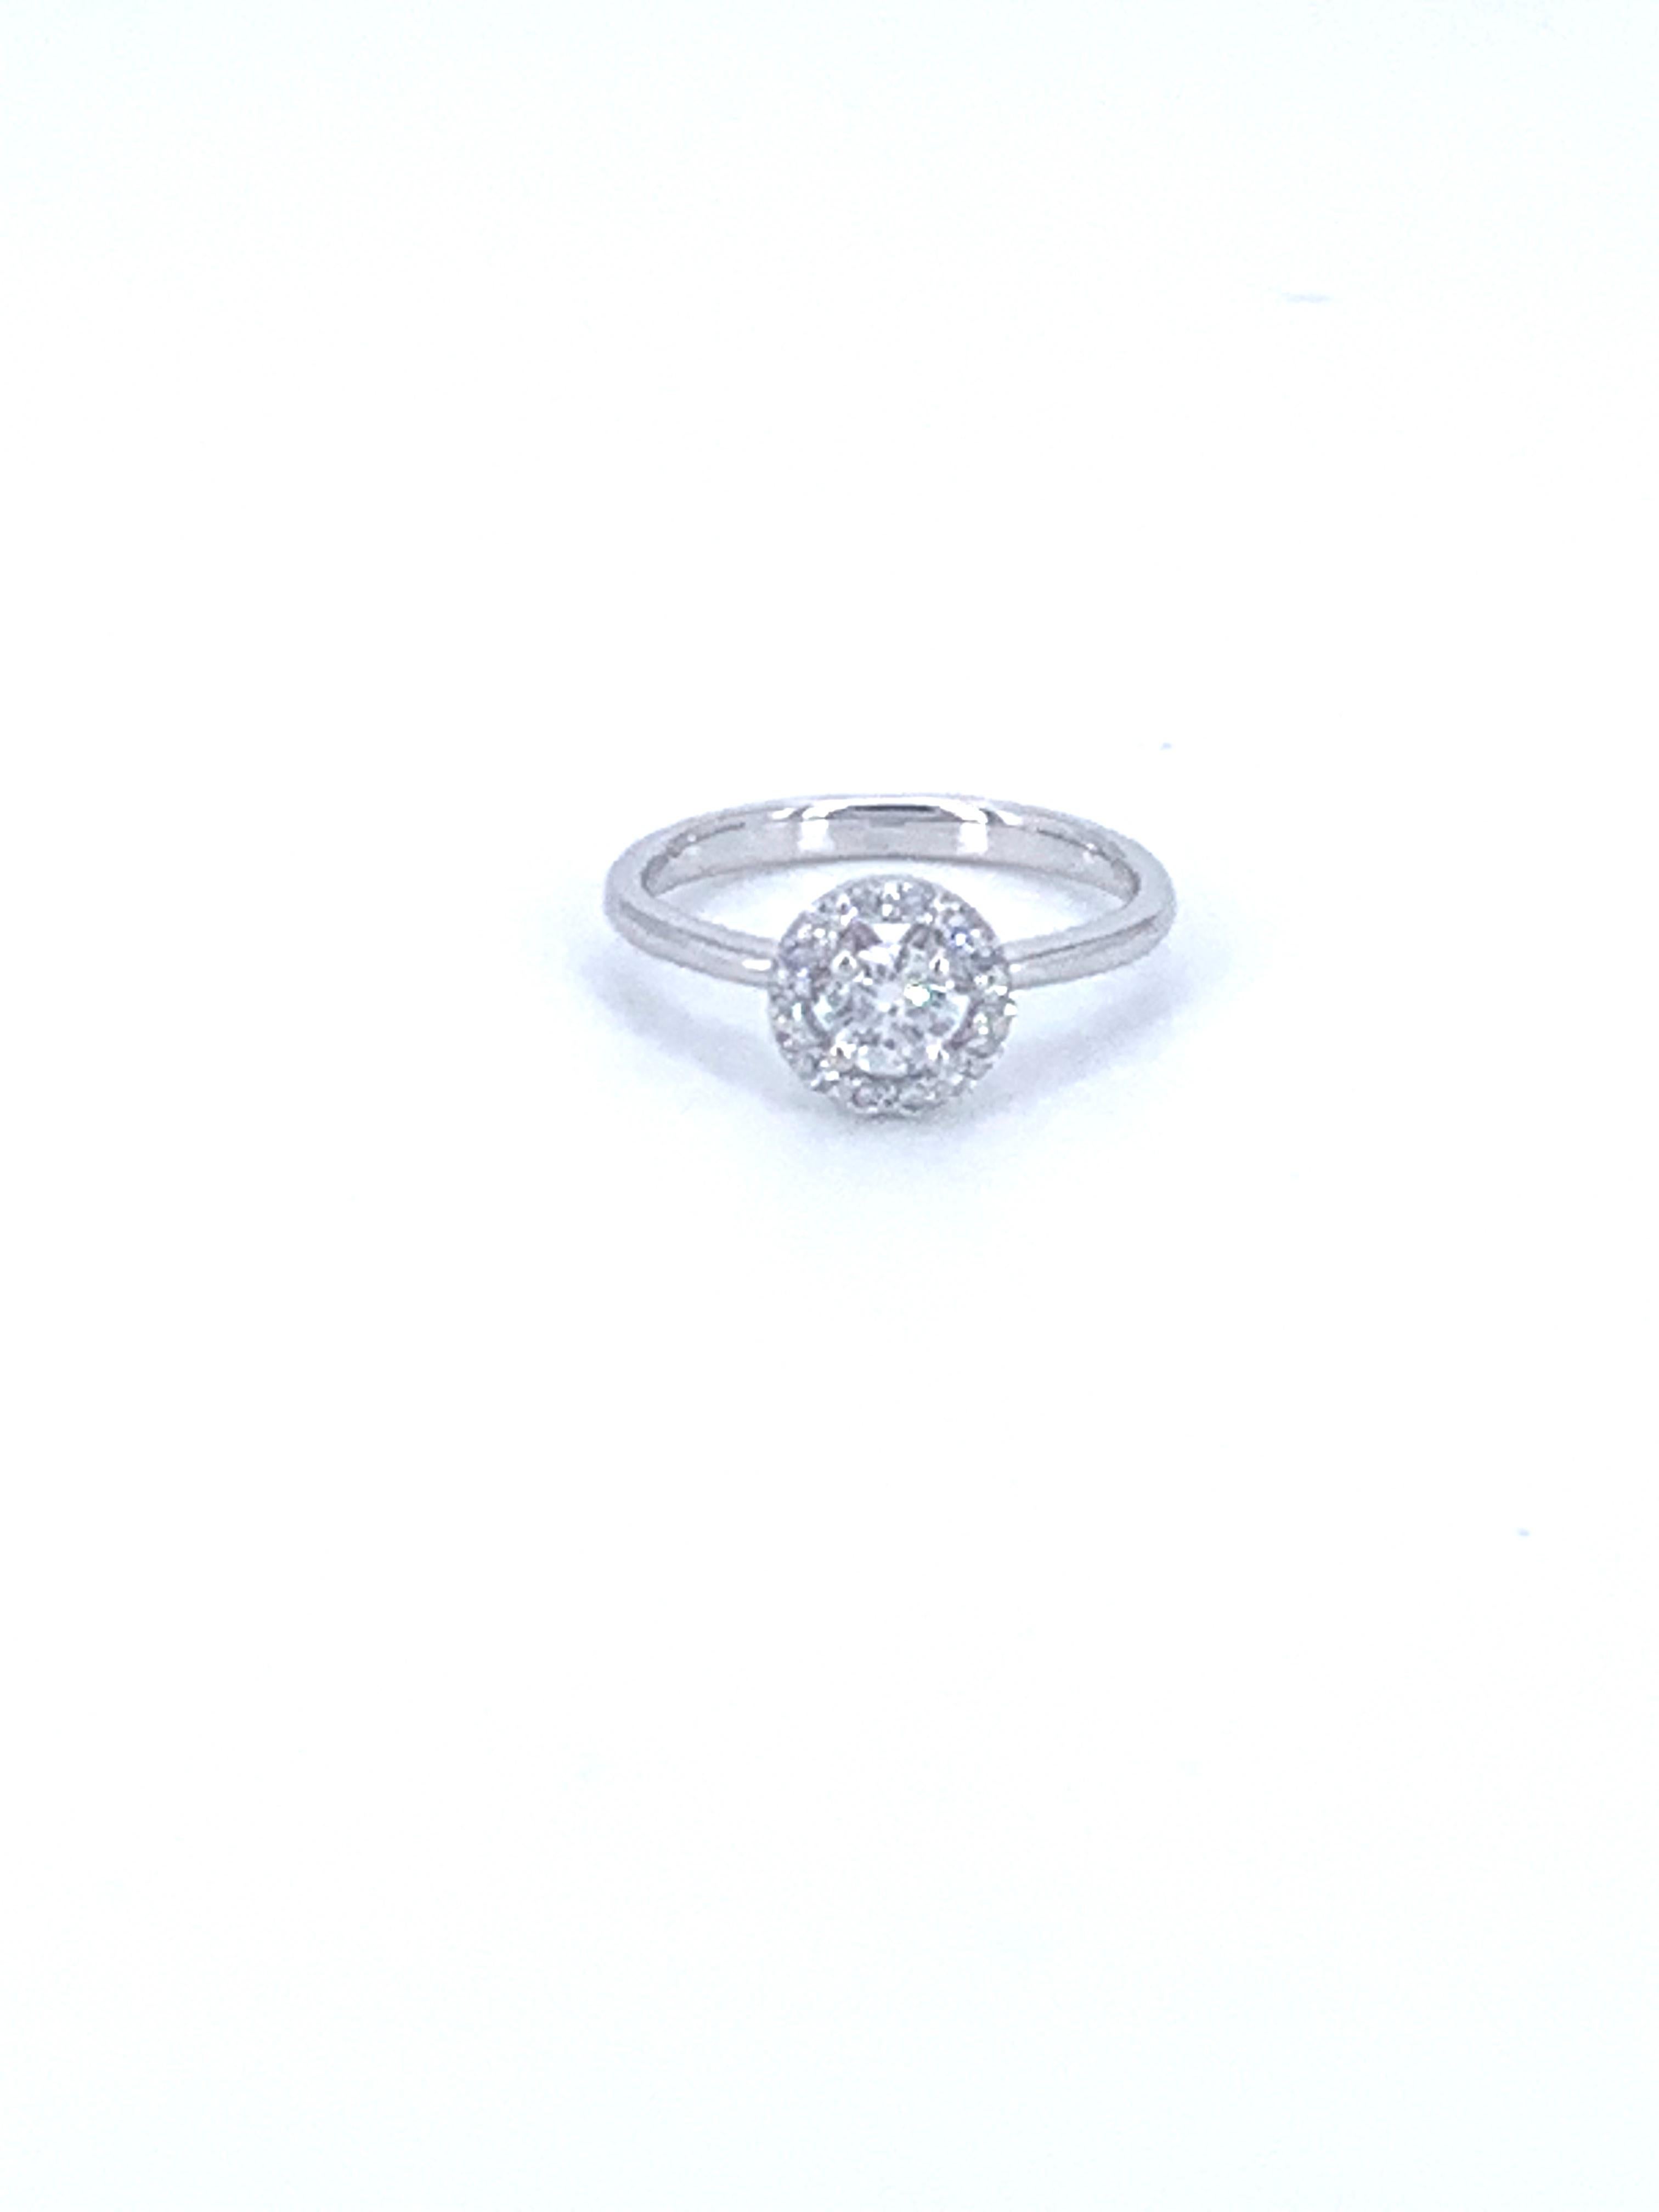 Dieser Halo-Solitär-Diamantring mit 0,57 Karat stammt aus der Jennifer Collection'S und ist in 18 Karat Weißgold gefasst. 

Er kann jeden Finger schmücken und verleiht der Hand Glamour und Stil. Das perfekte Geschenk für einen selbst oder einen